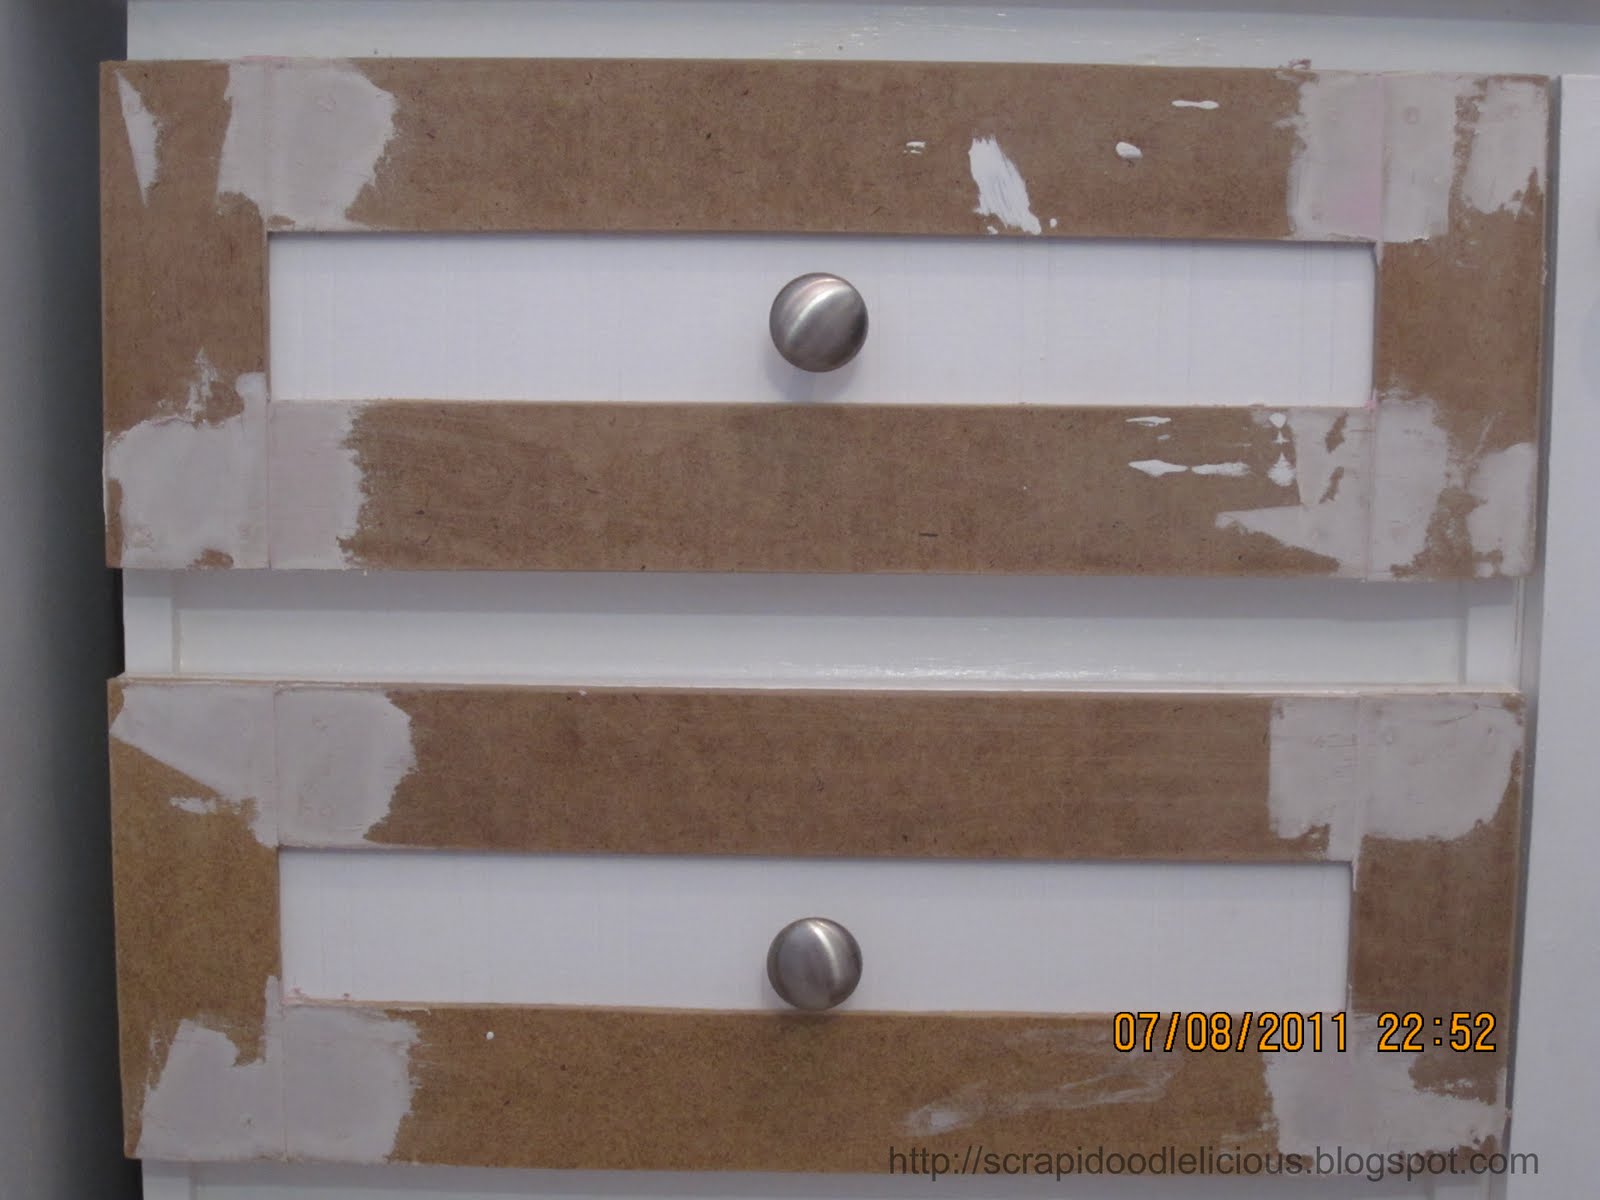 Scrapidoodlelicious: Beadboard Wallpaper in Kitchen Cabinets